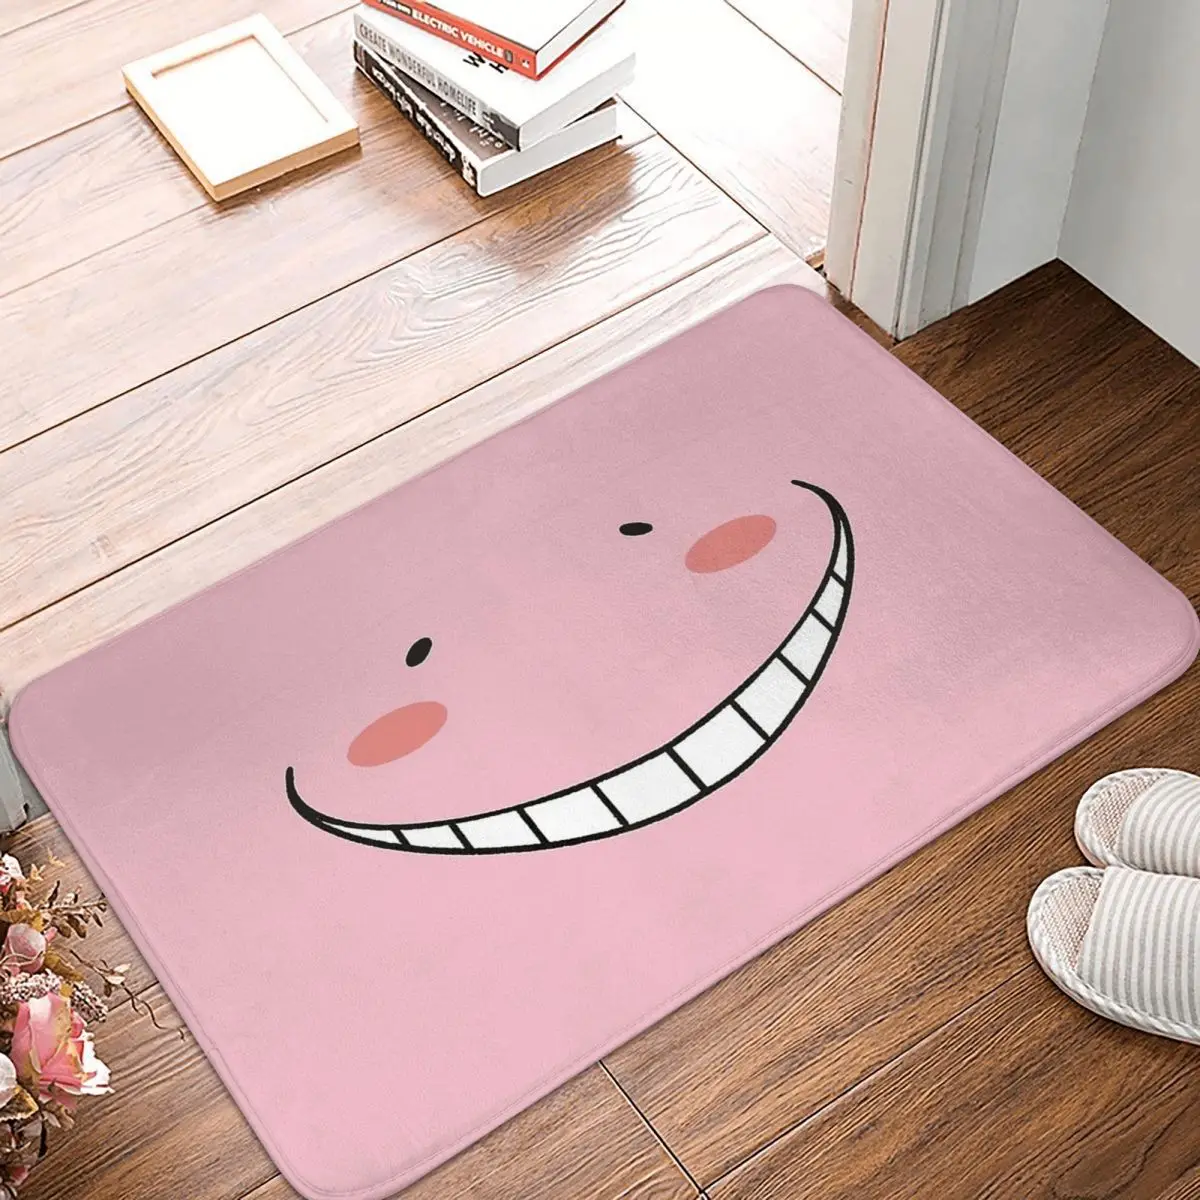 

Assassination Classroom Octopus Teacher Bath Mat Pink Koro Sensei Doormat Flannel Carpet Outdoor Rug Home Decor